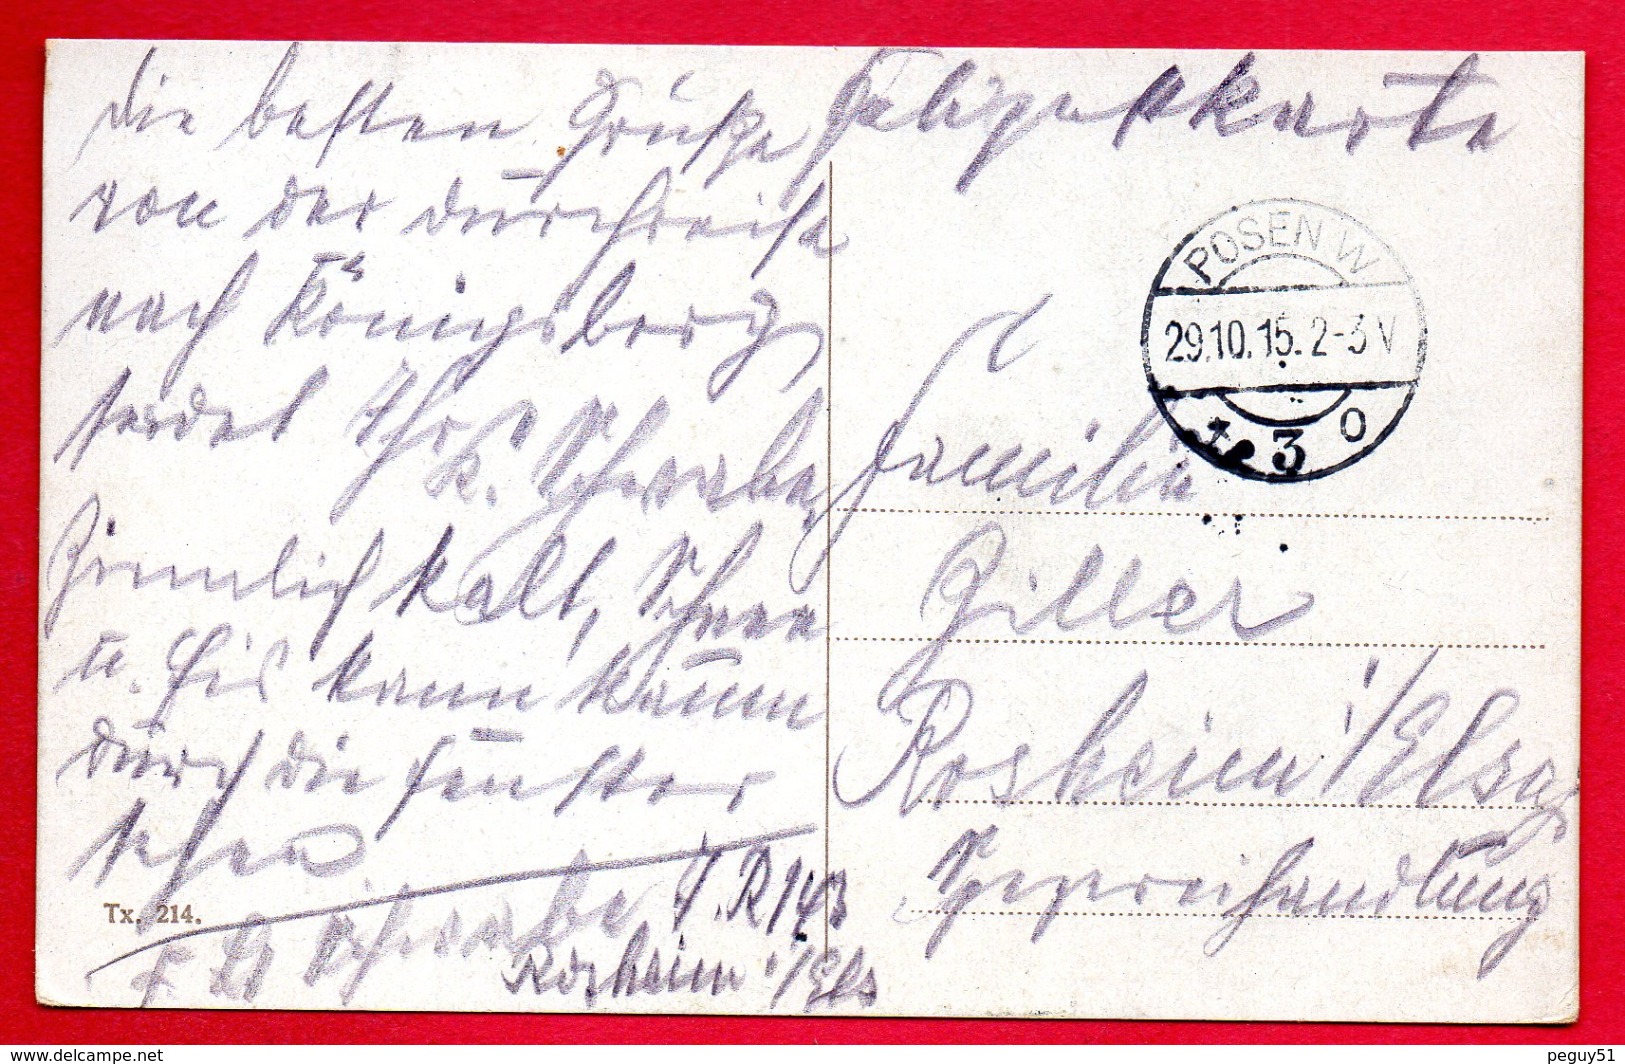 Pologne. Posen (Poznan). Königliches Residenzschloss. Feldpost Posen Octobre 1915 - Pologne